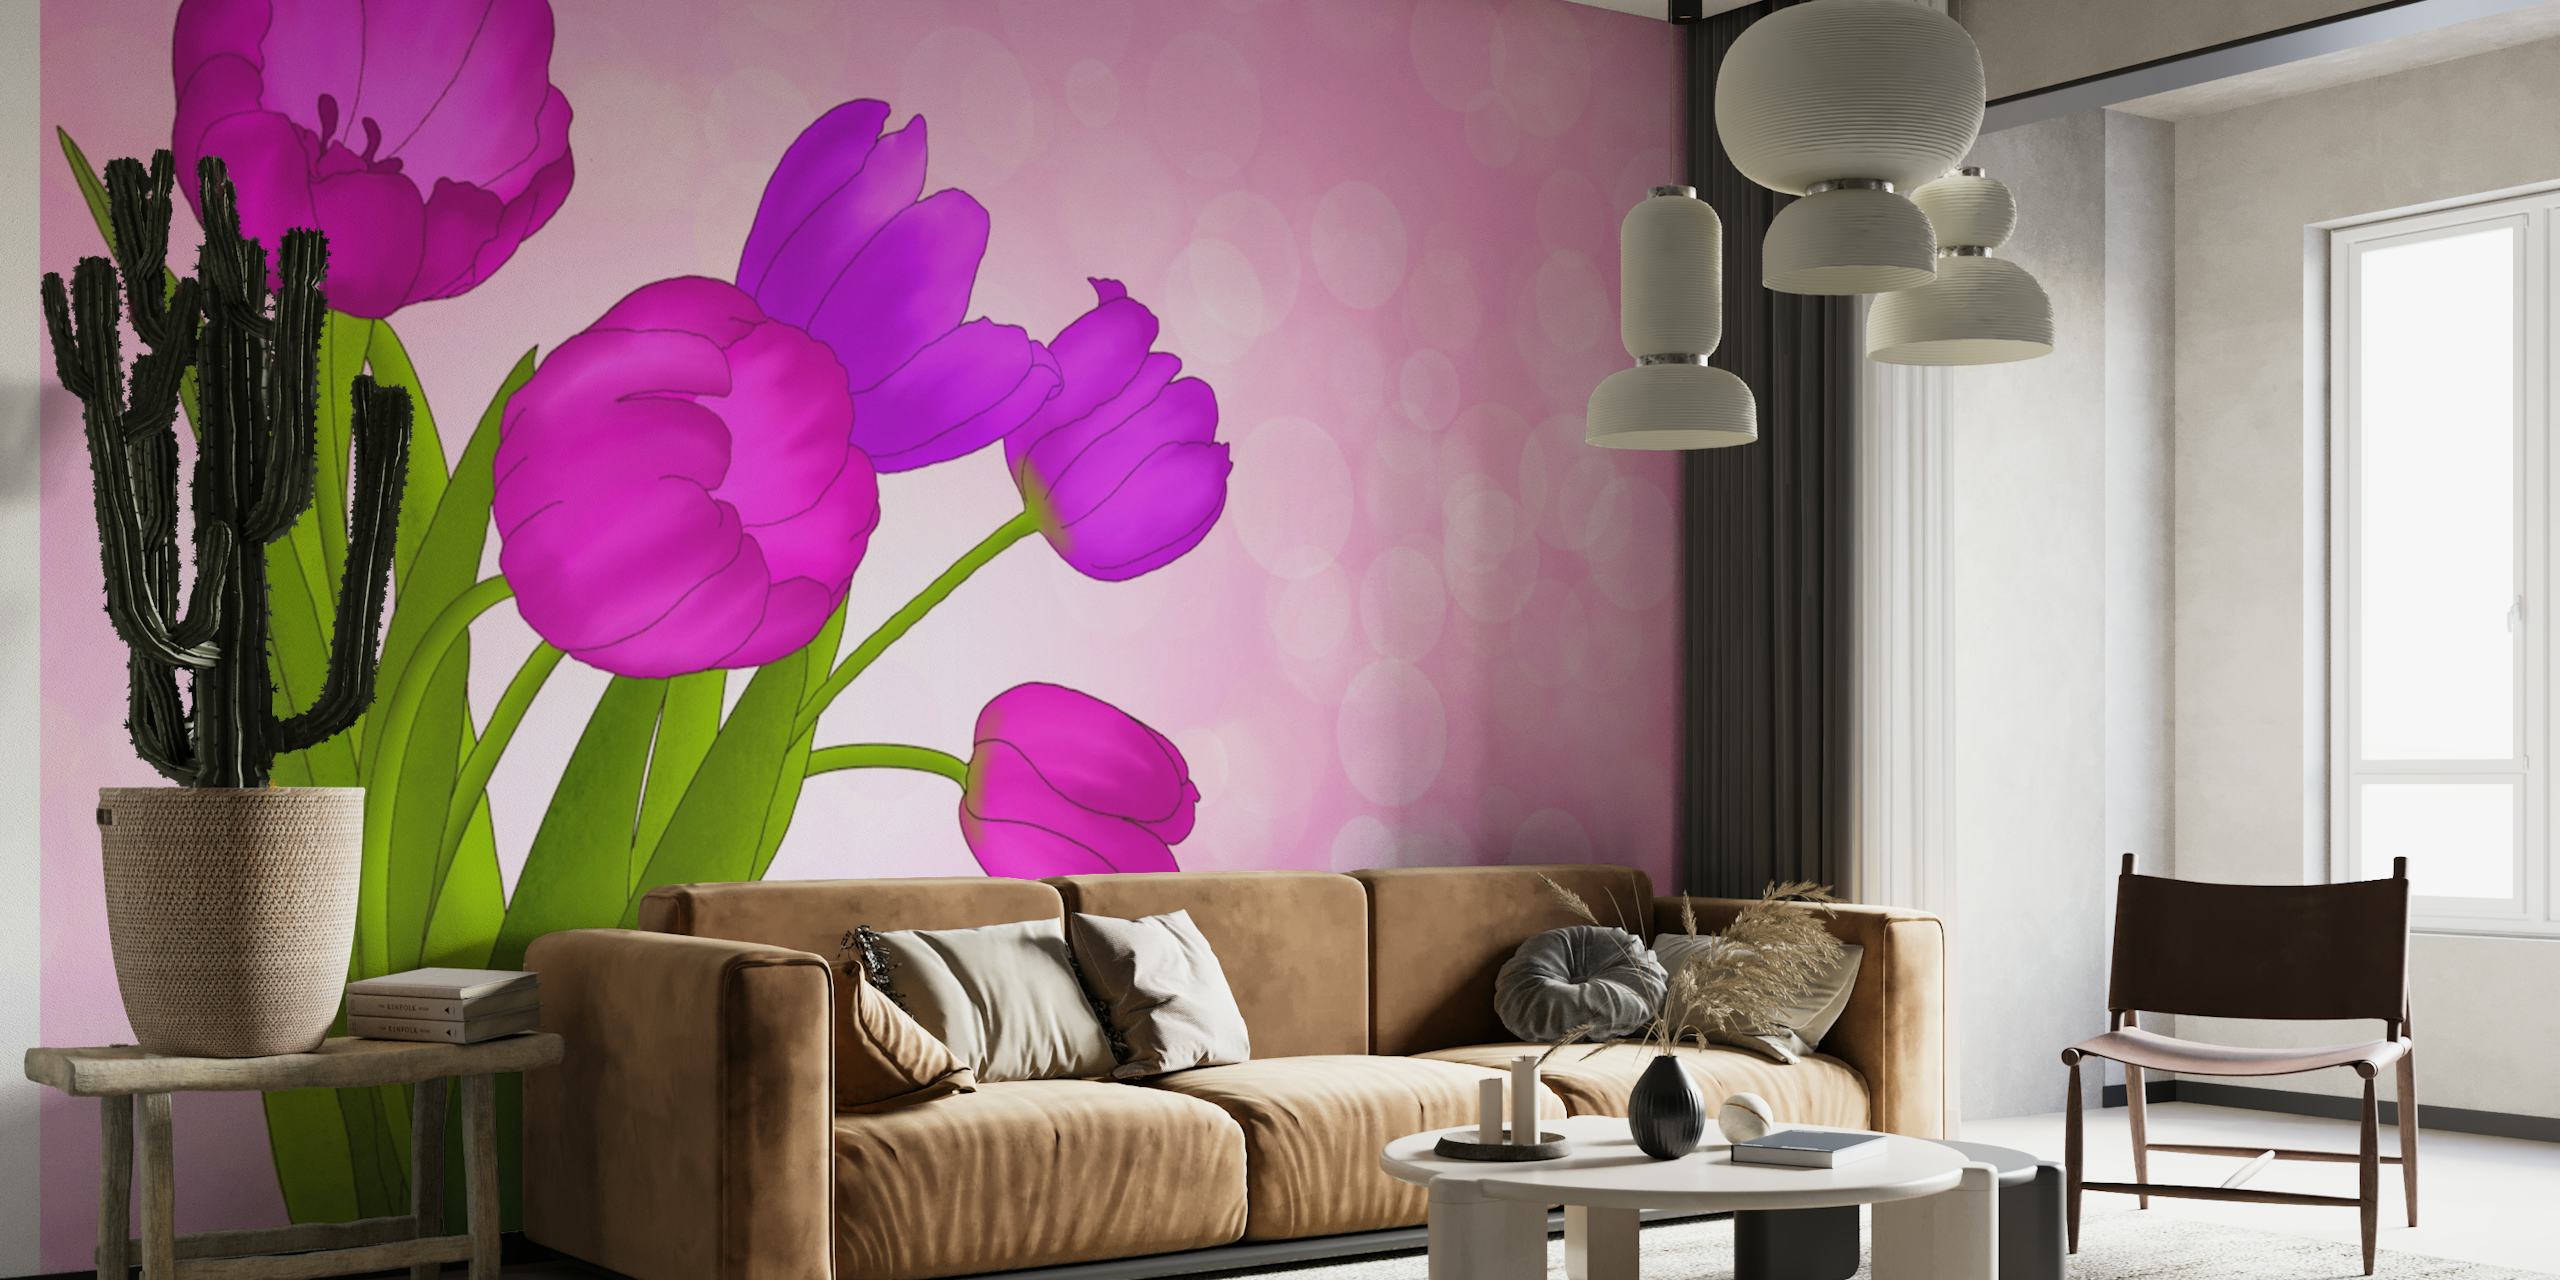 Pink and Purple Tulips 4 papel pintado